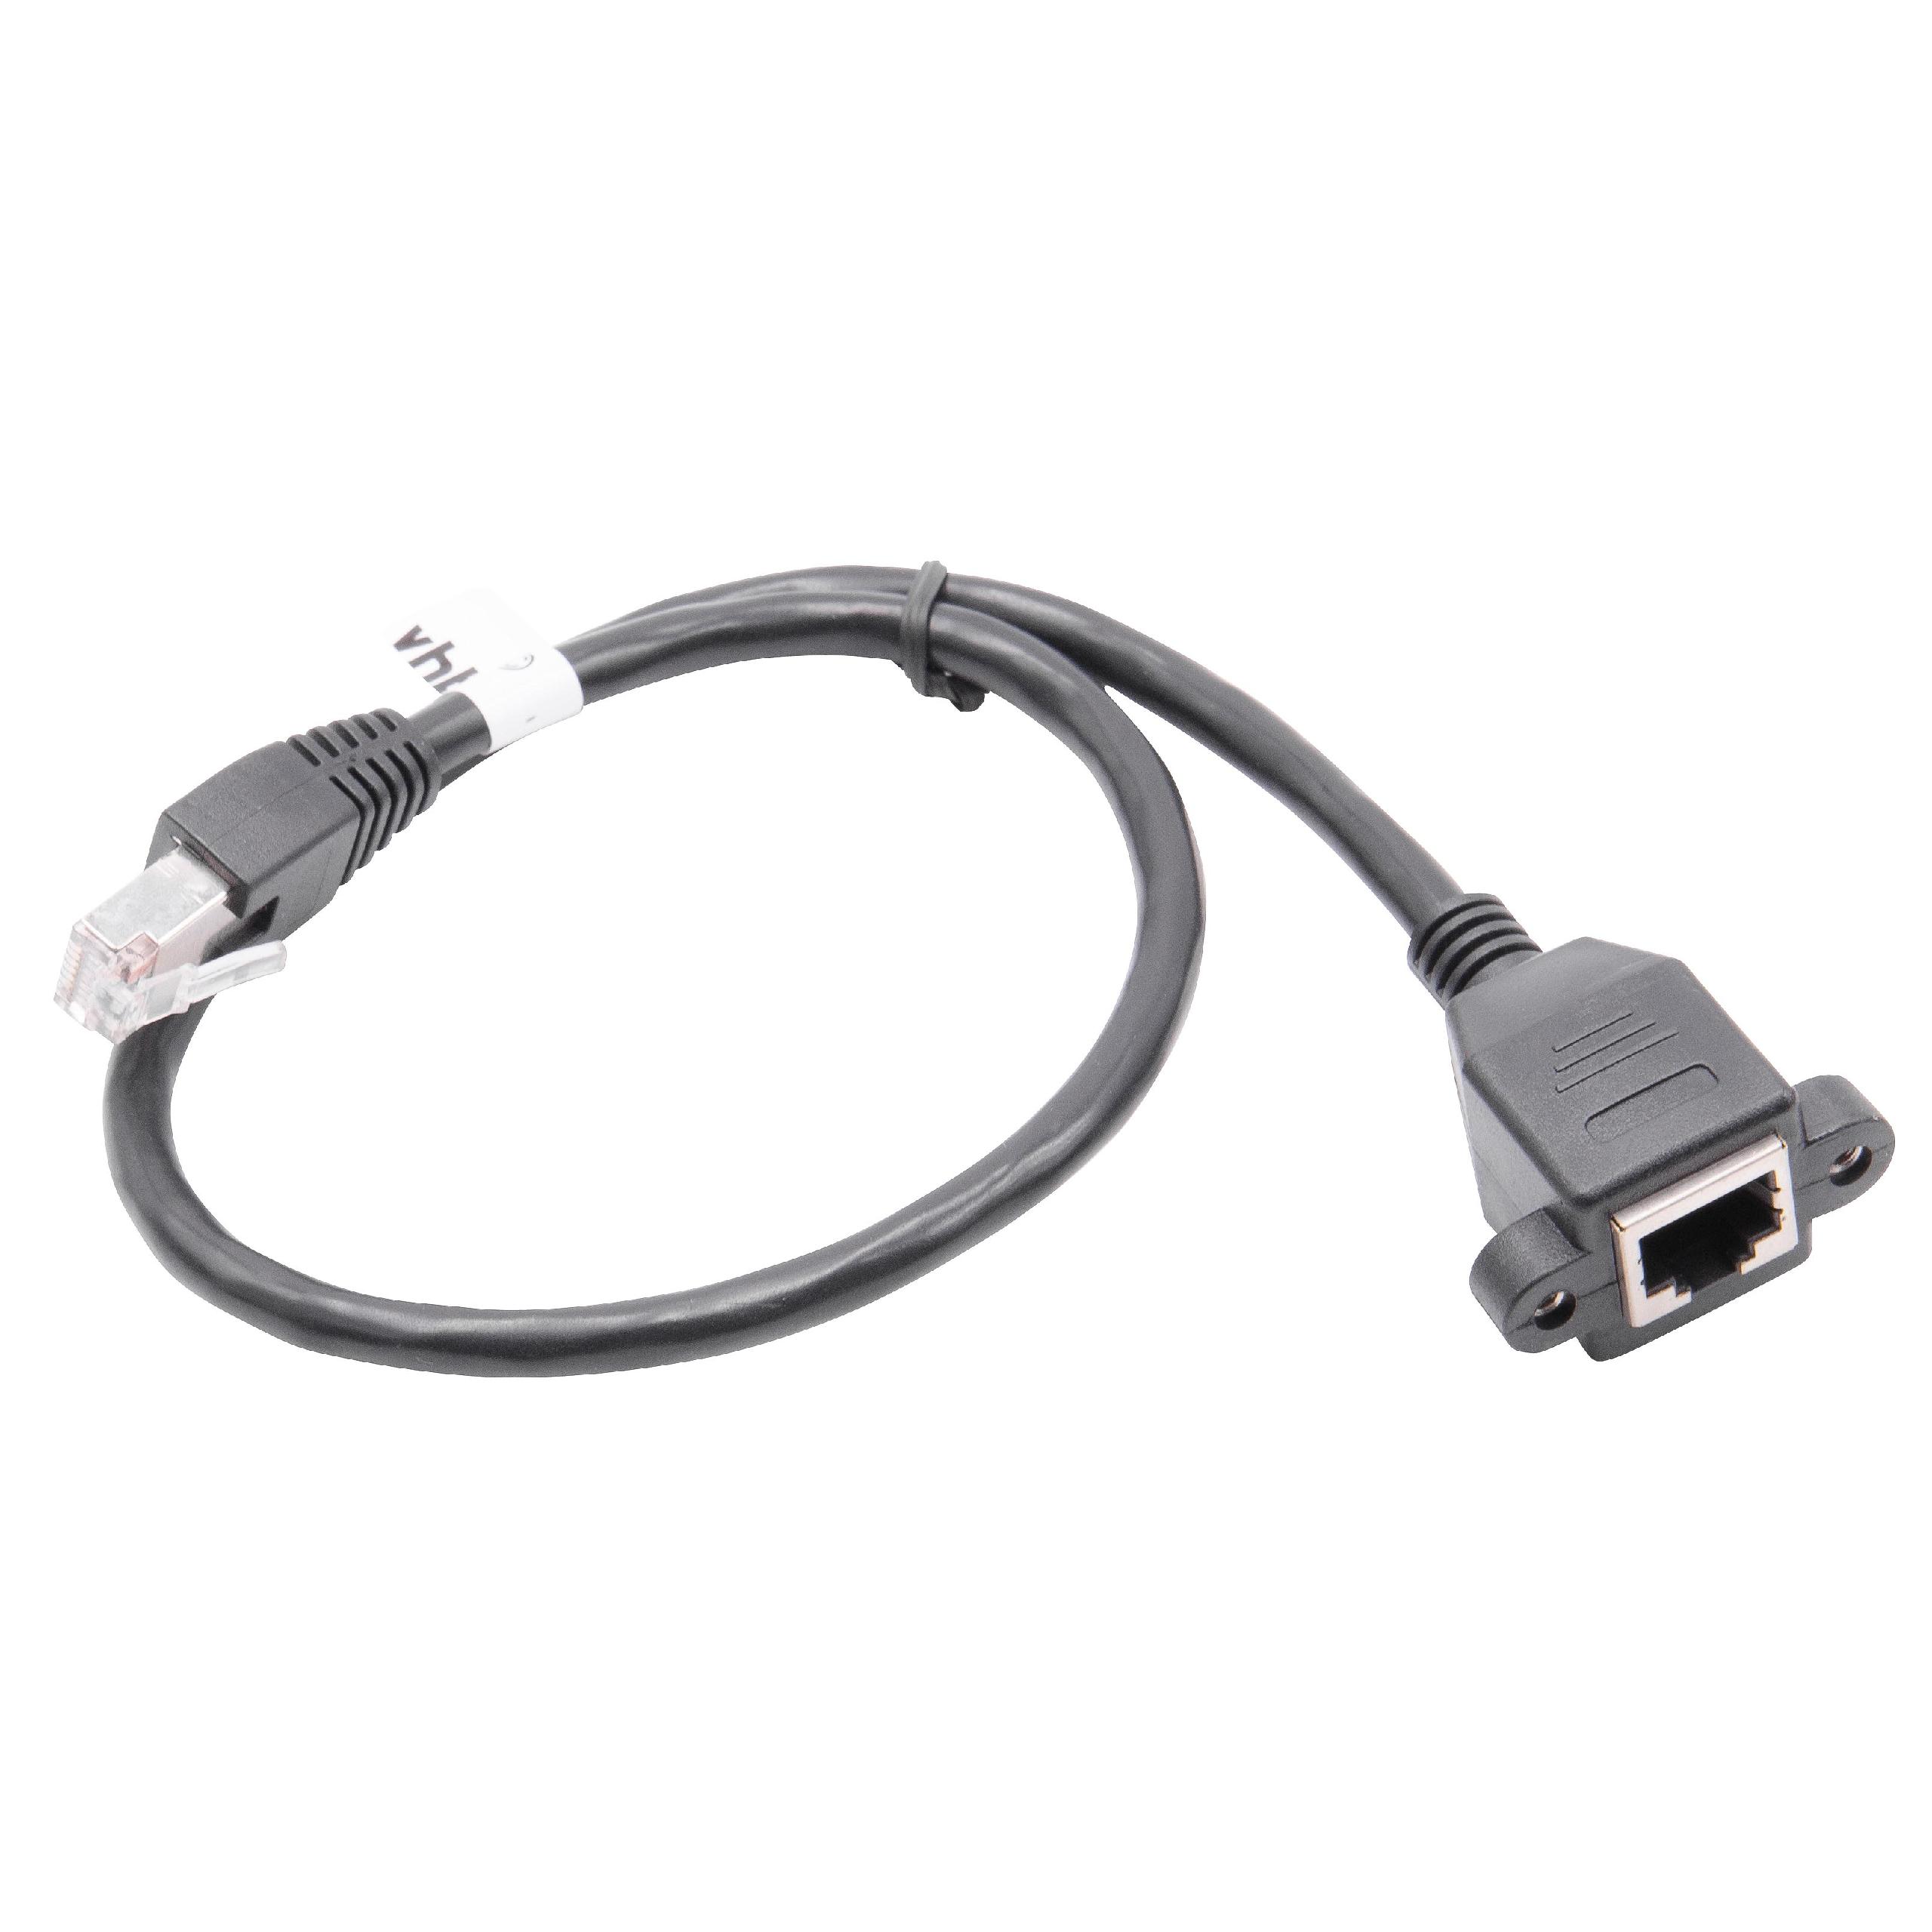 Cable de extensión Cat6, RJ45 (m) a RJ45 (h) - Cable Ethernet LAN con conector RJ45 incorporado, 0,5 m